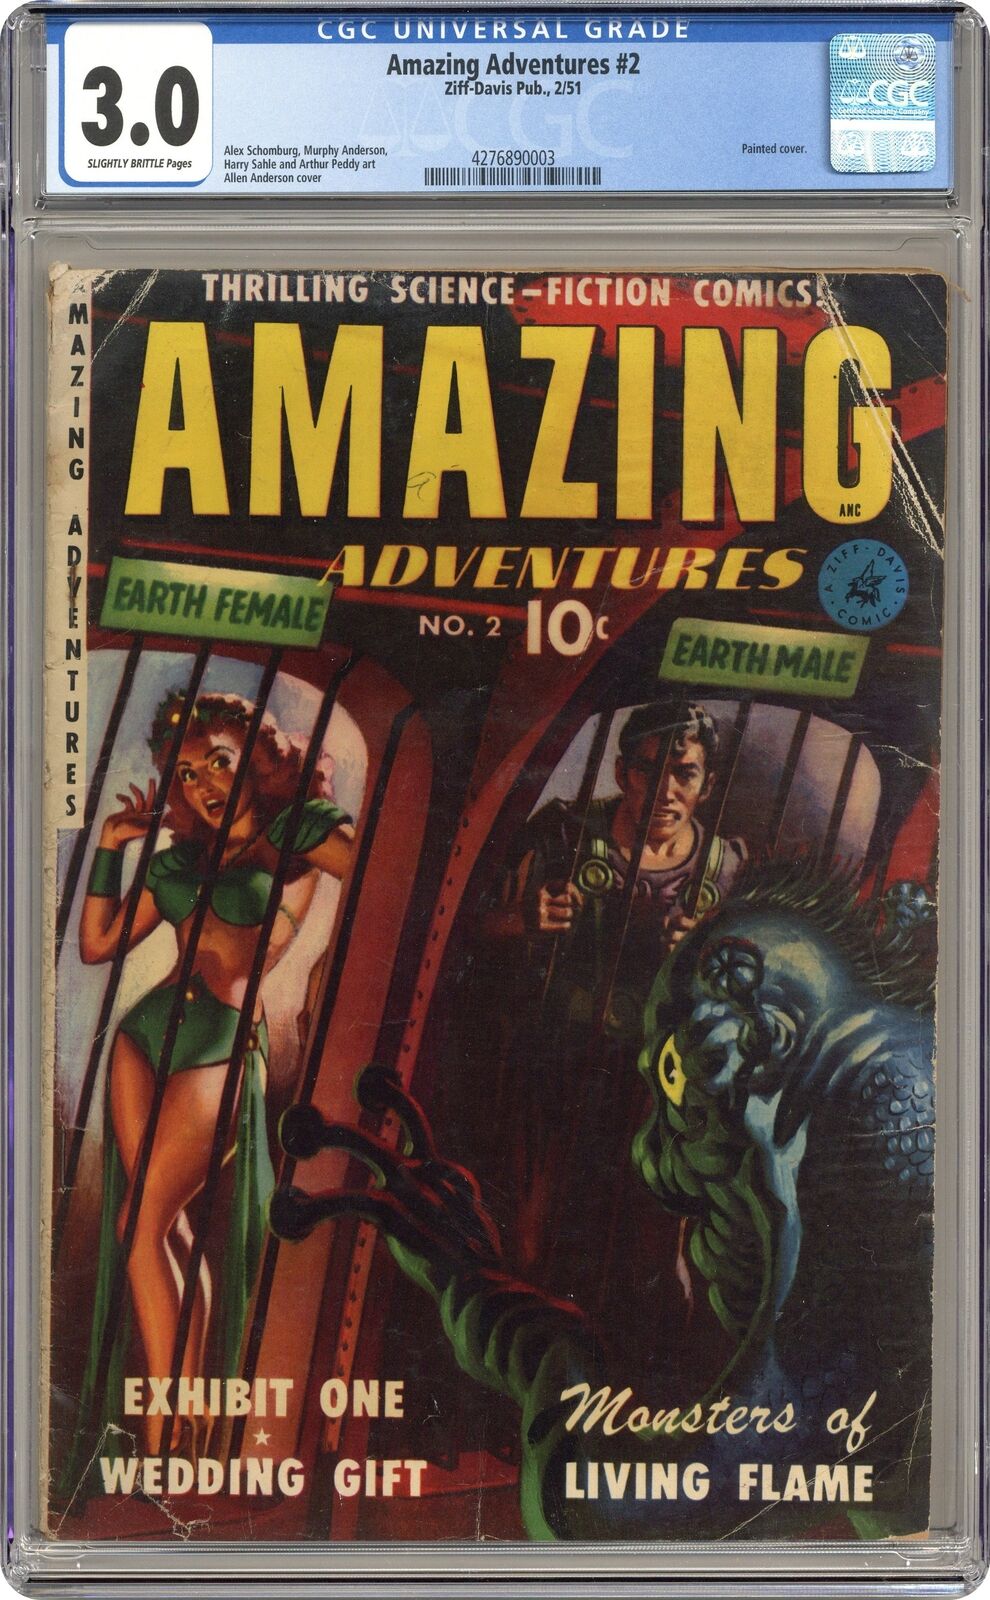 Amazing Adventures #2 CGC 3.0 1951 4276890003